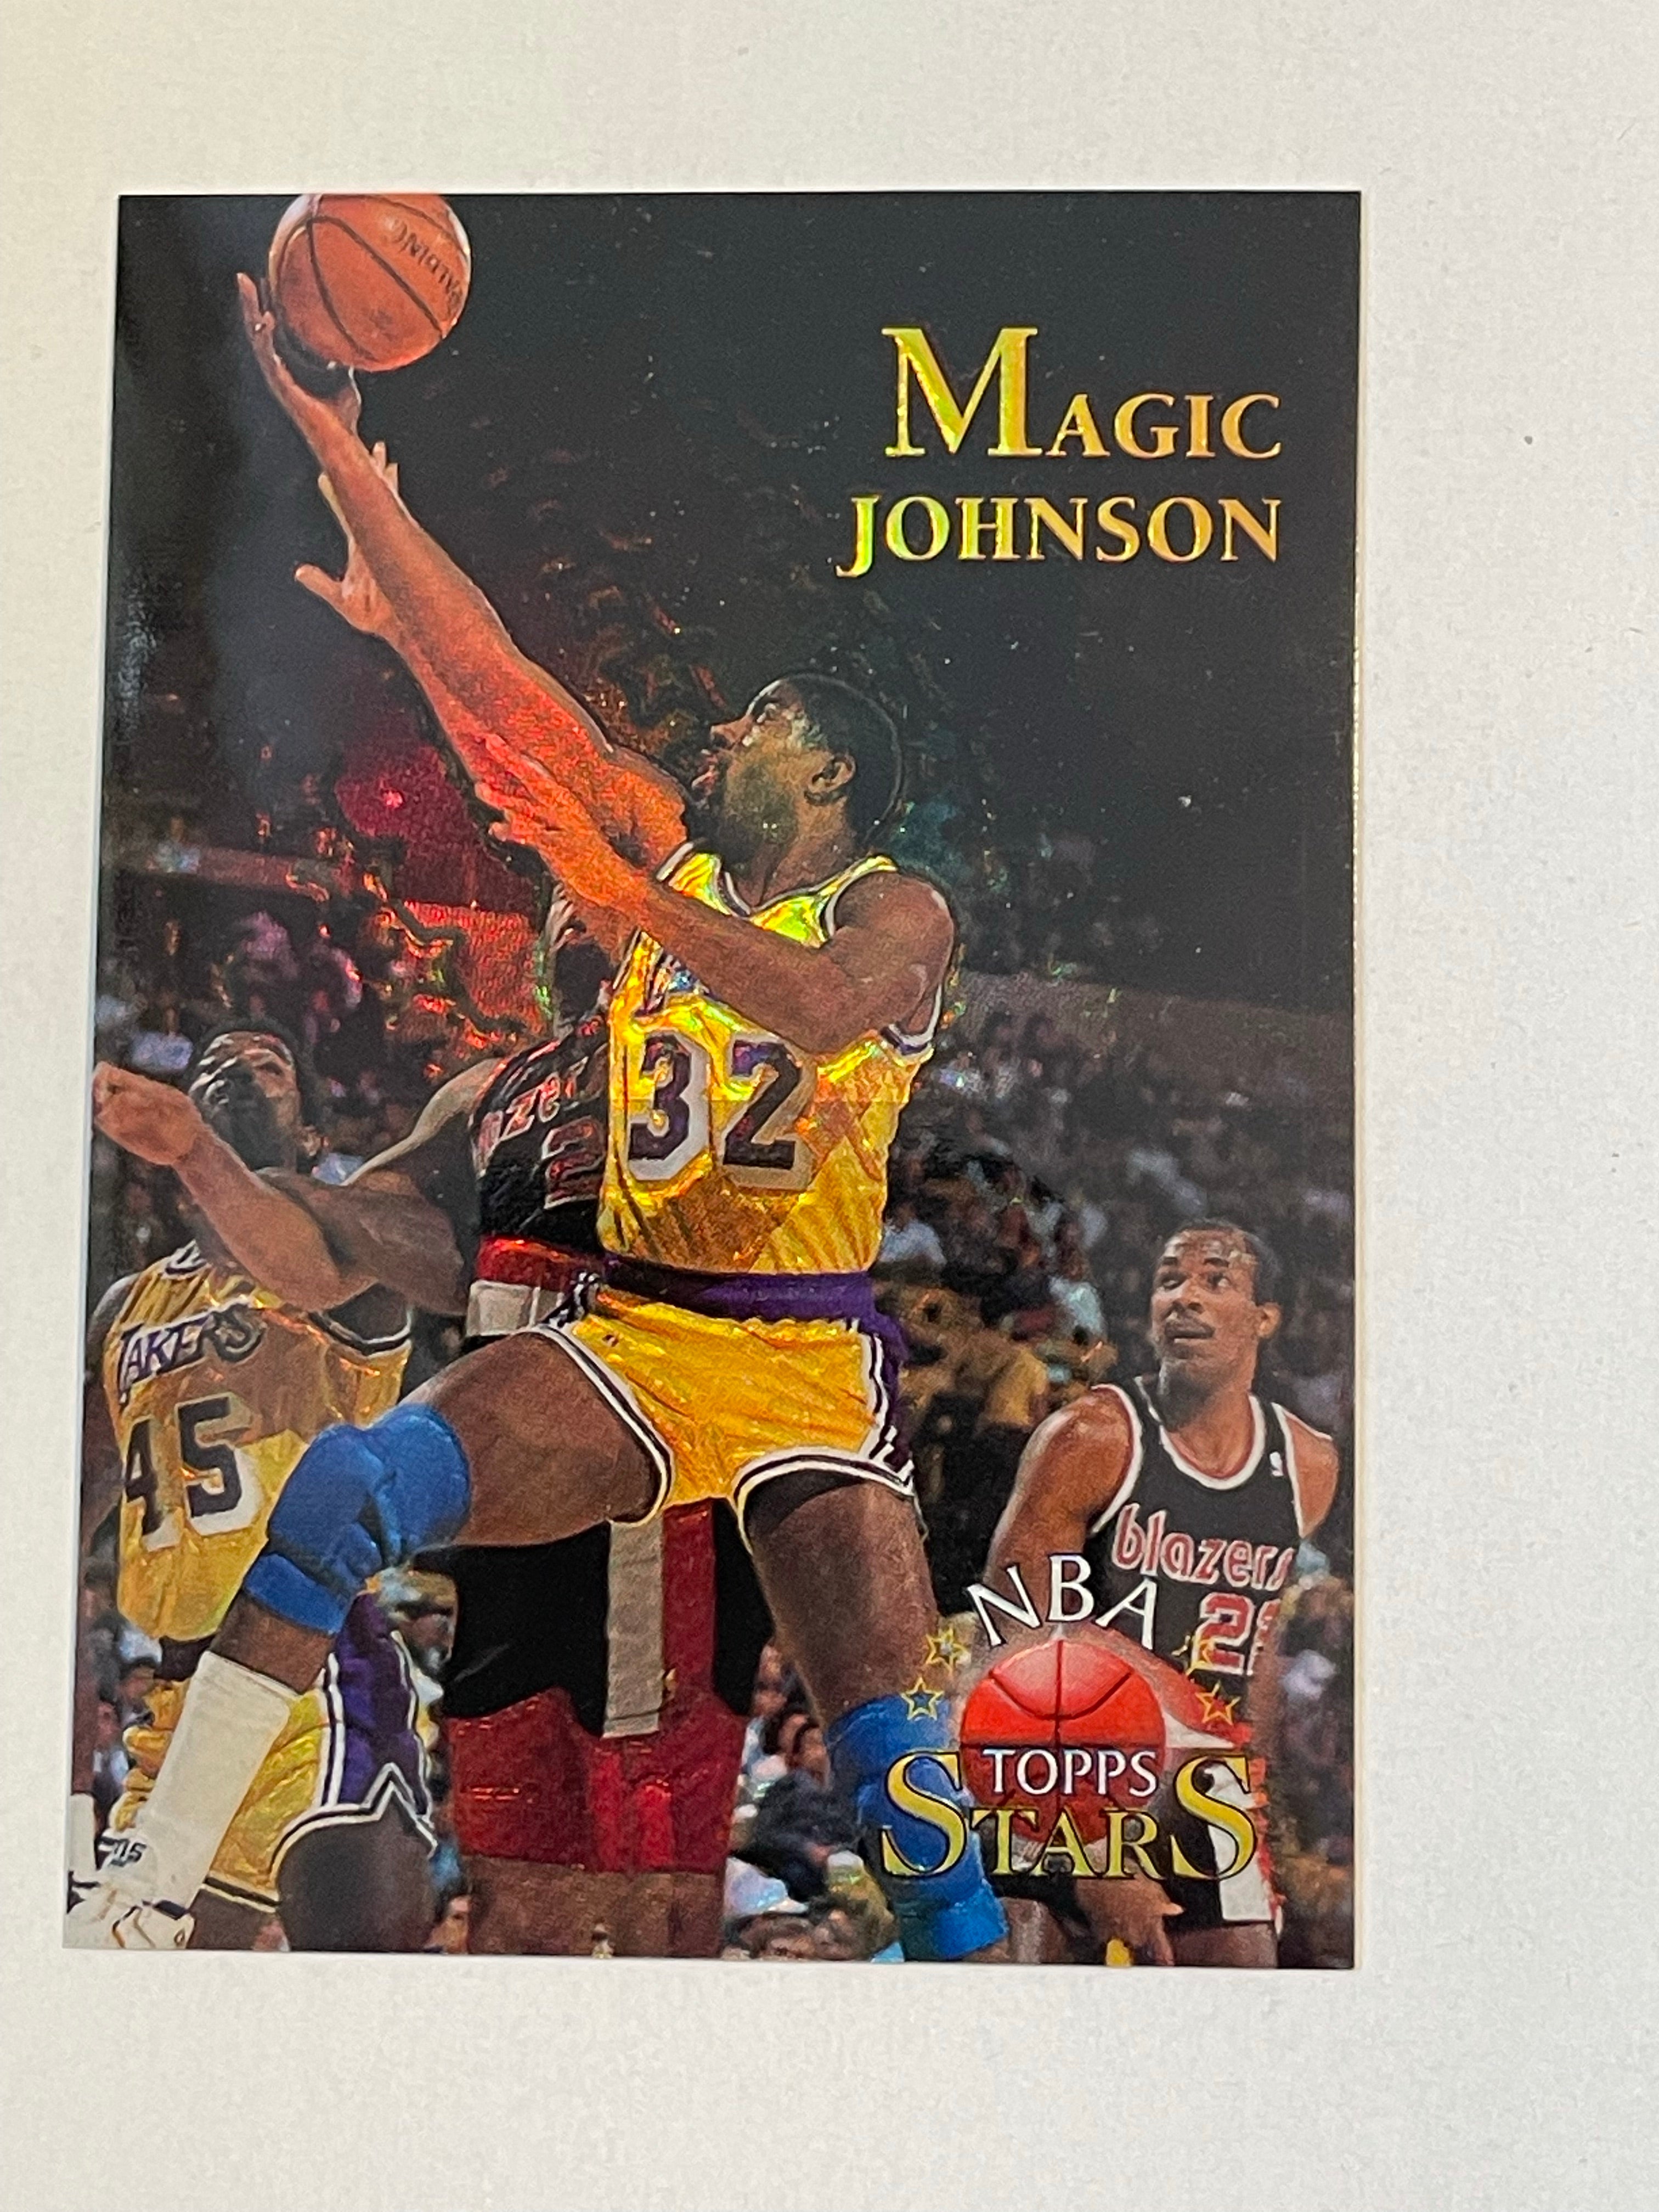 Magic Johnson Topps Stars refractor basketball insert card